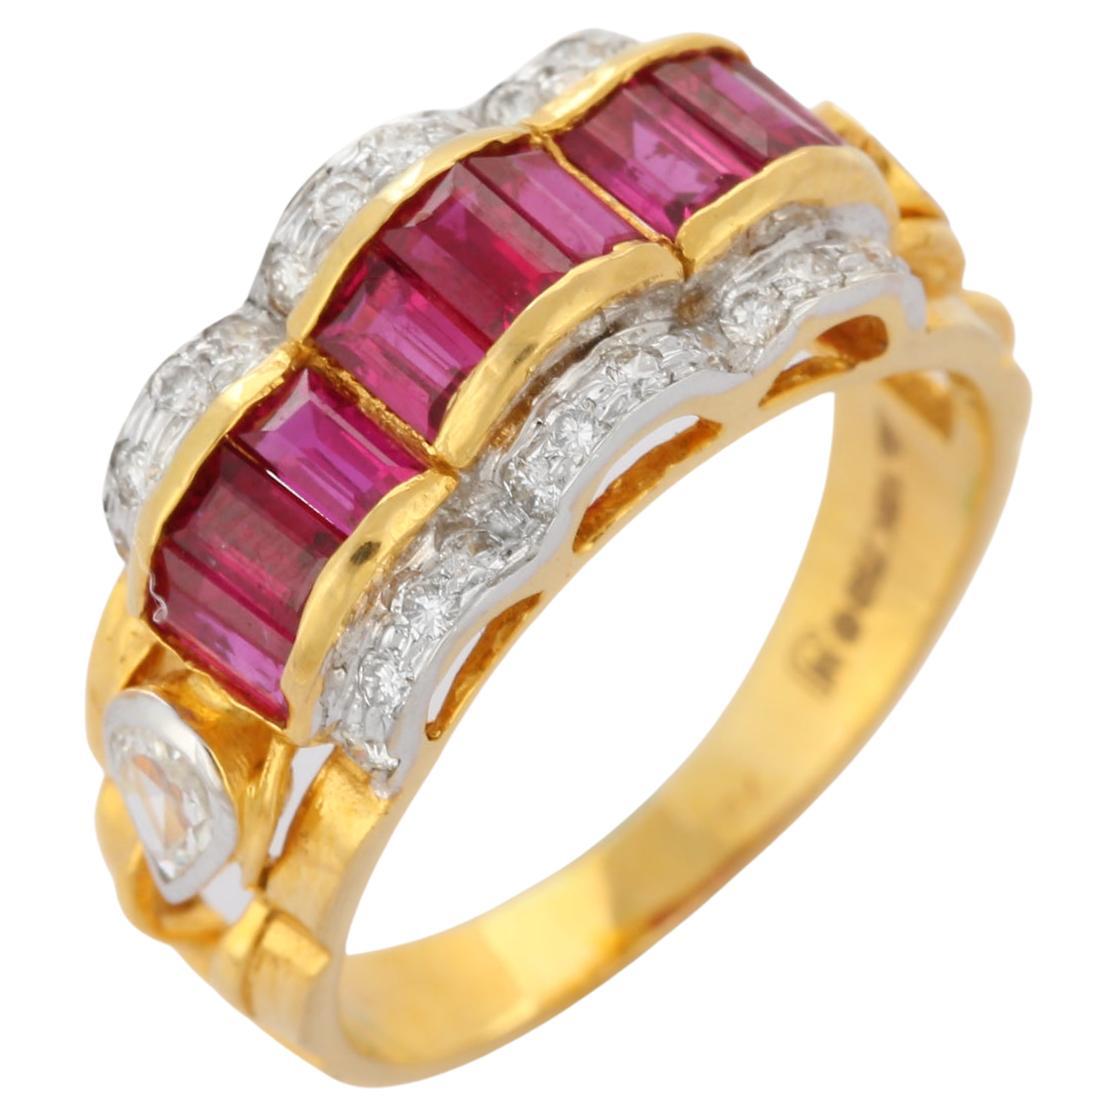 Bague de mariage contemporaine en or jaune 18K avec rubis et diamants de 2,7 ct